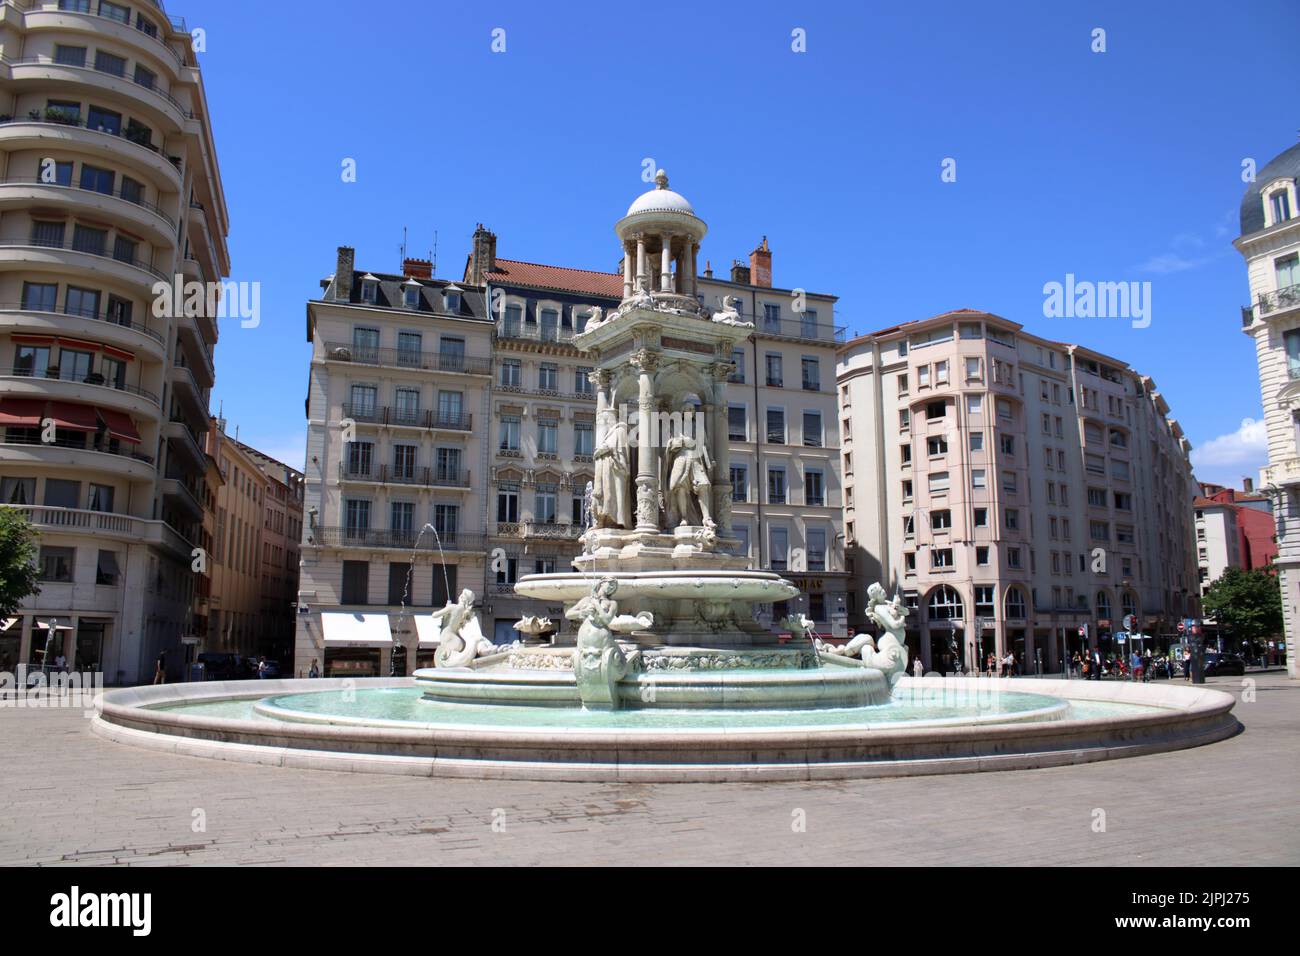 Fontaine sur la place des Jacobins dans le centre de Lyon sculptée par le célèbre sculpteur français Charles Degeorge au 19th siècle. Banque D'Images